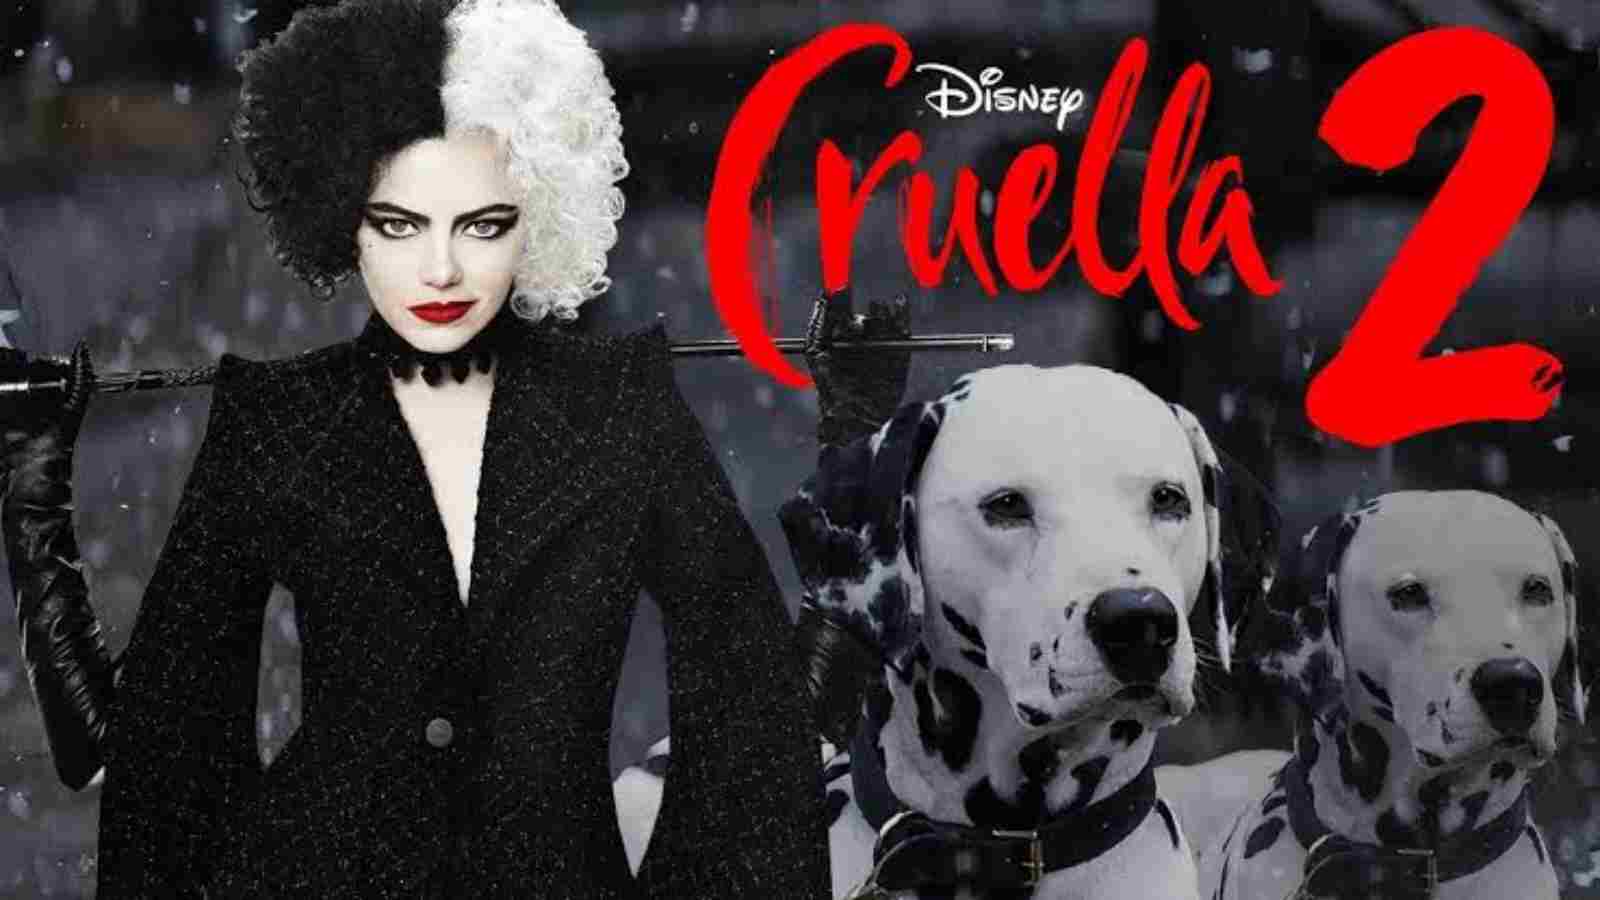 'Cruella 2' Cast, Plot And Release Date Of Emma Stone's Disney Film